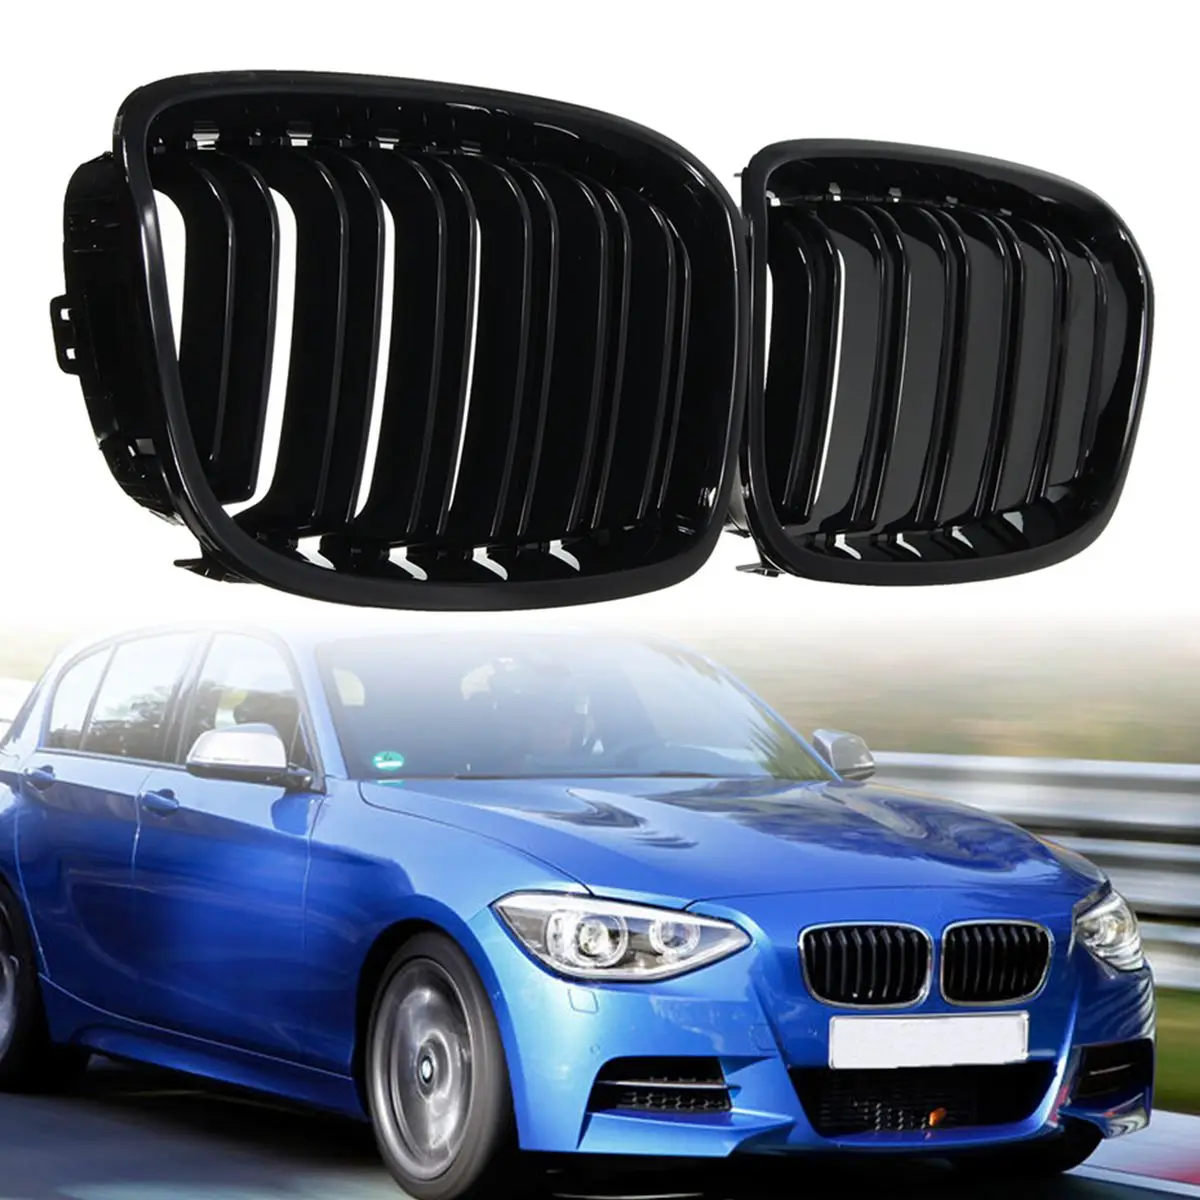 

Передняя решетка-гриль, сменная решетка для почек для BMW 1 серии F20 F21 2010 2011 2012 2013 2014, двойная планка, ярко-черный